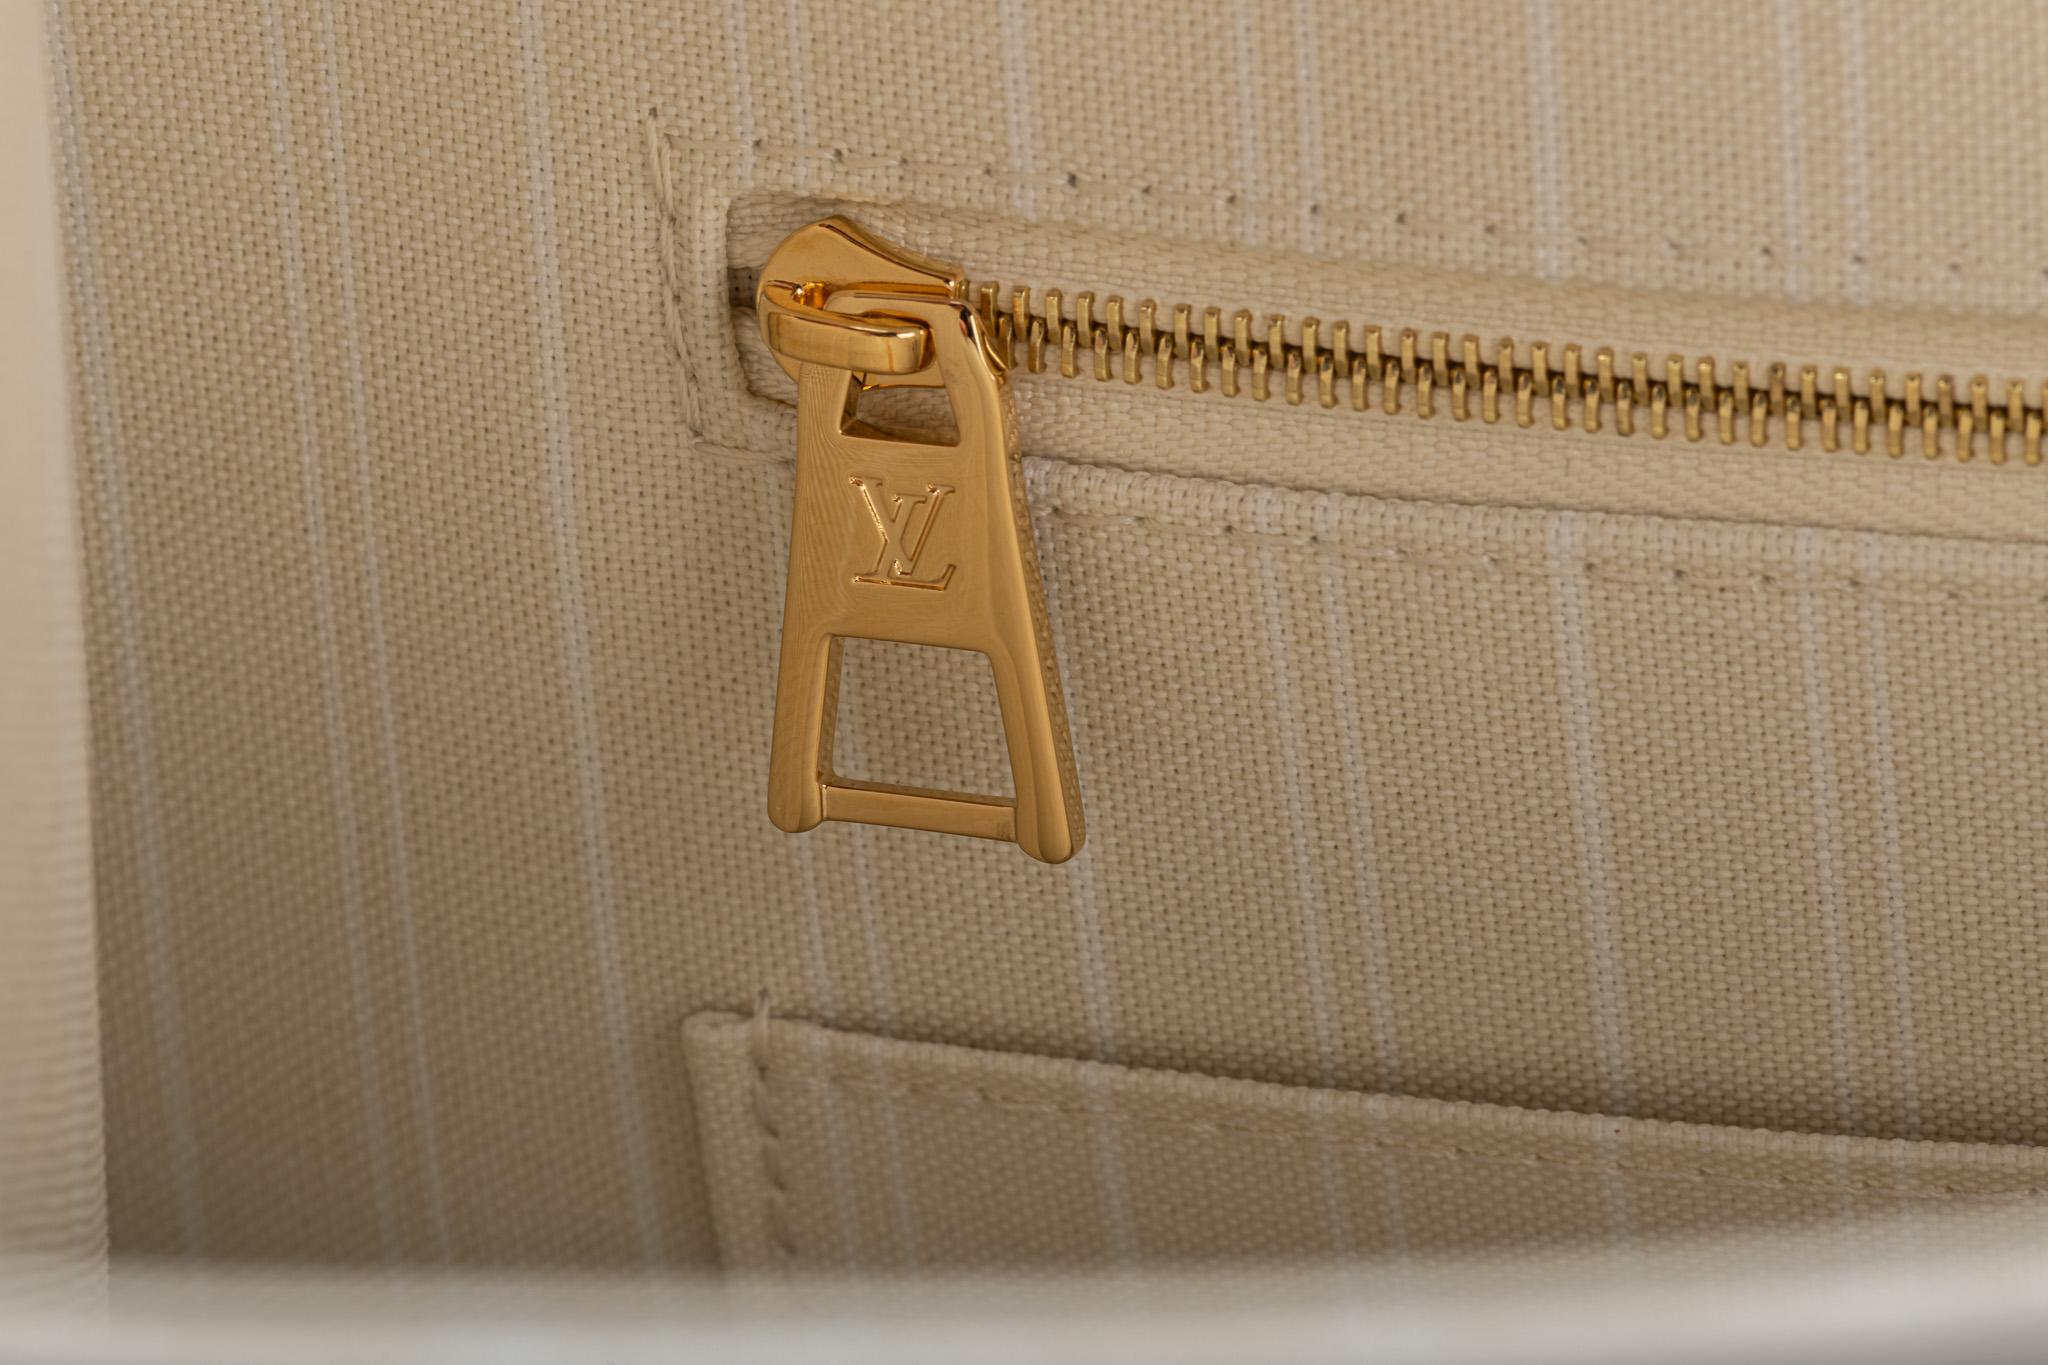 Louis Vuitton 2021 On The Go Palma de Mallorca Bag For Sale 11